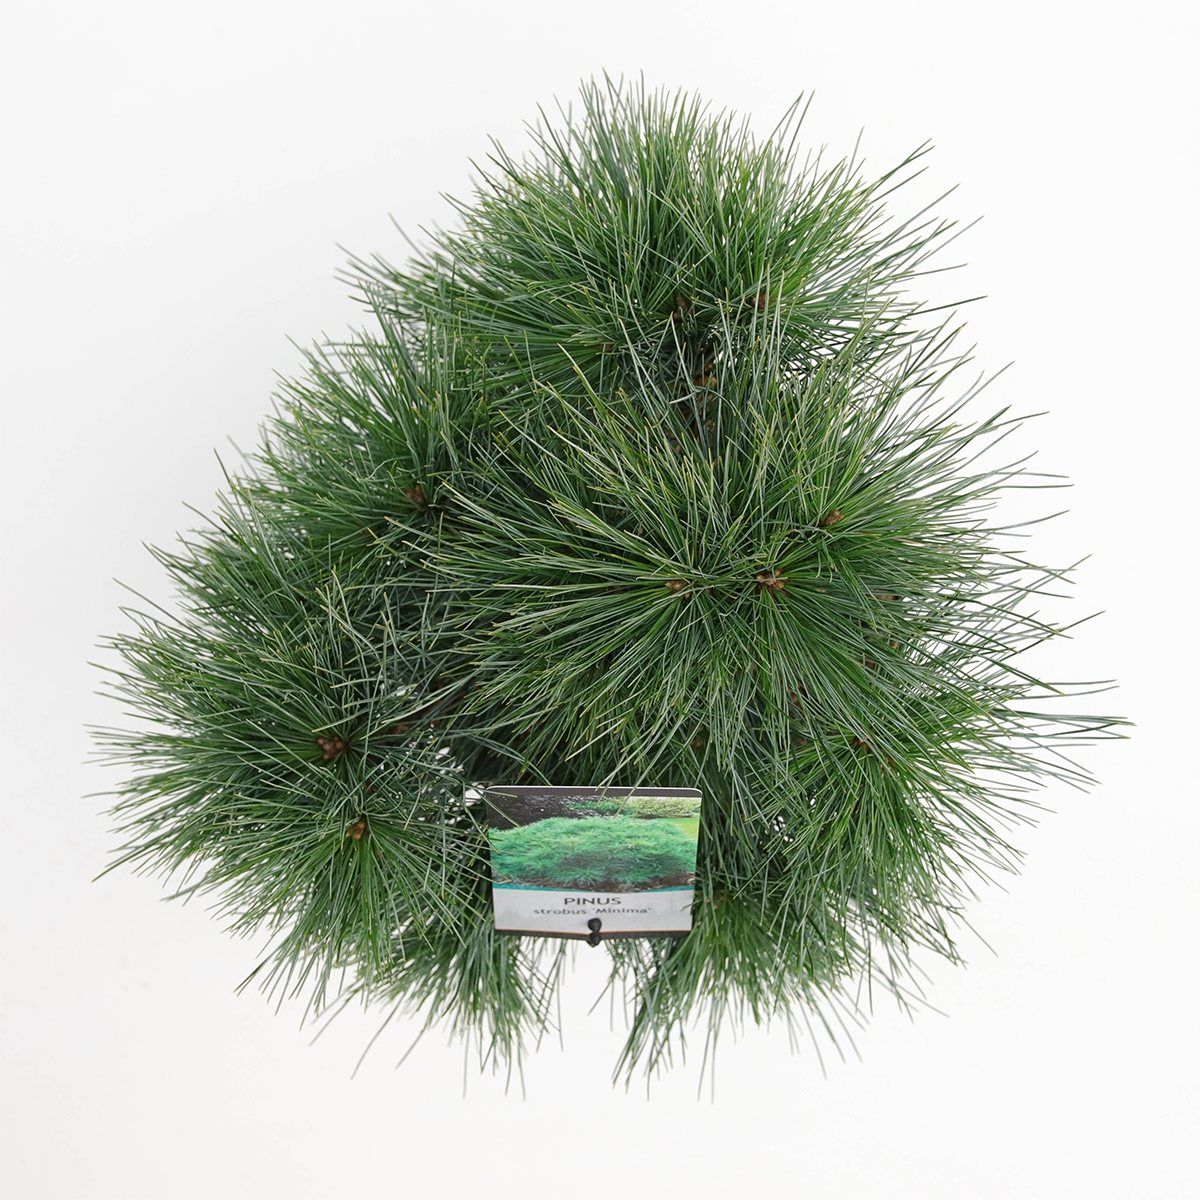 Pinus strobus "Minima" - Kääpiöstrobusmänty